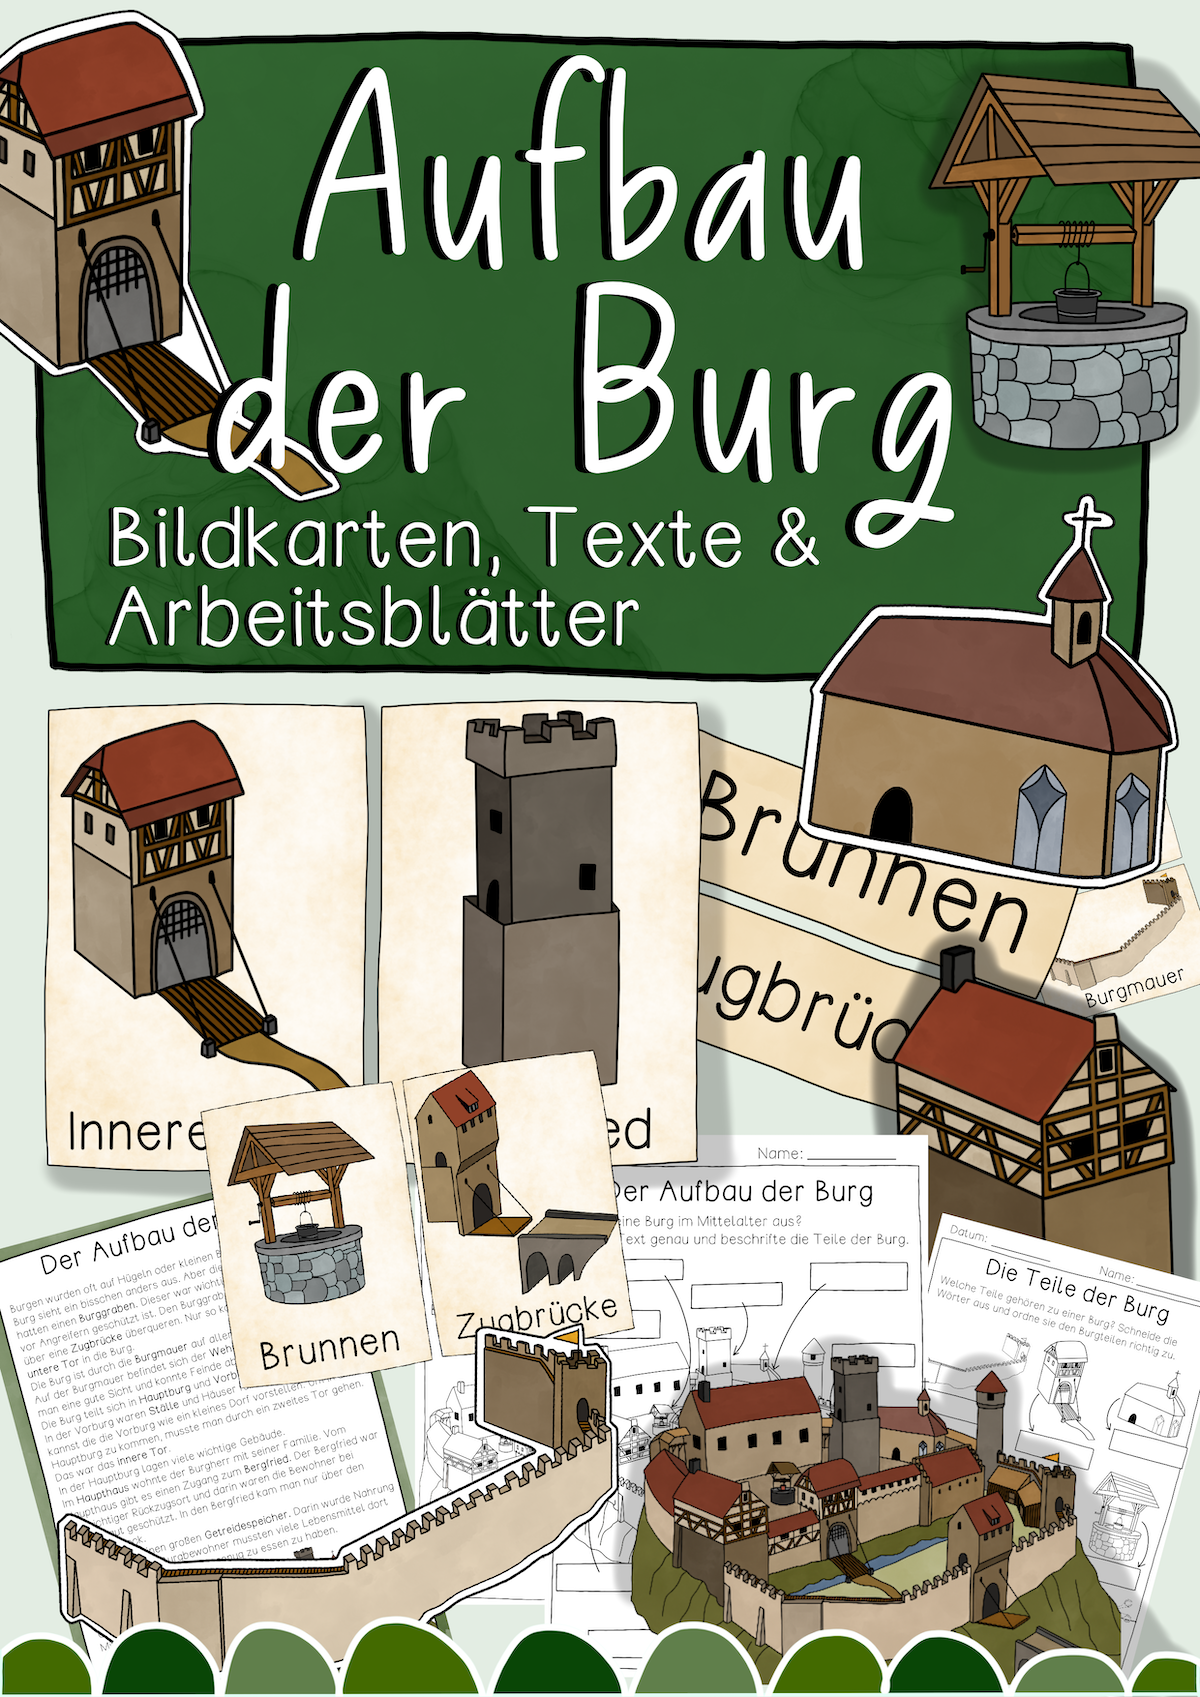 Aufbau der Burg - Tafelmaterial, Arbeitsblätter & Texte (PDF)